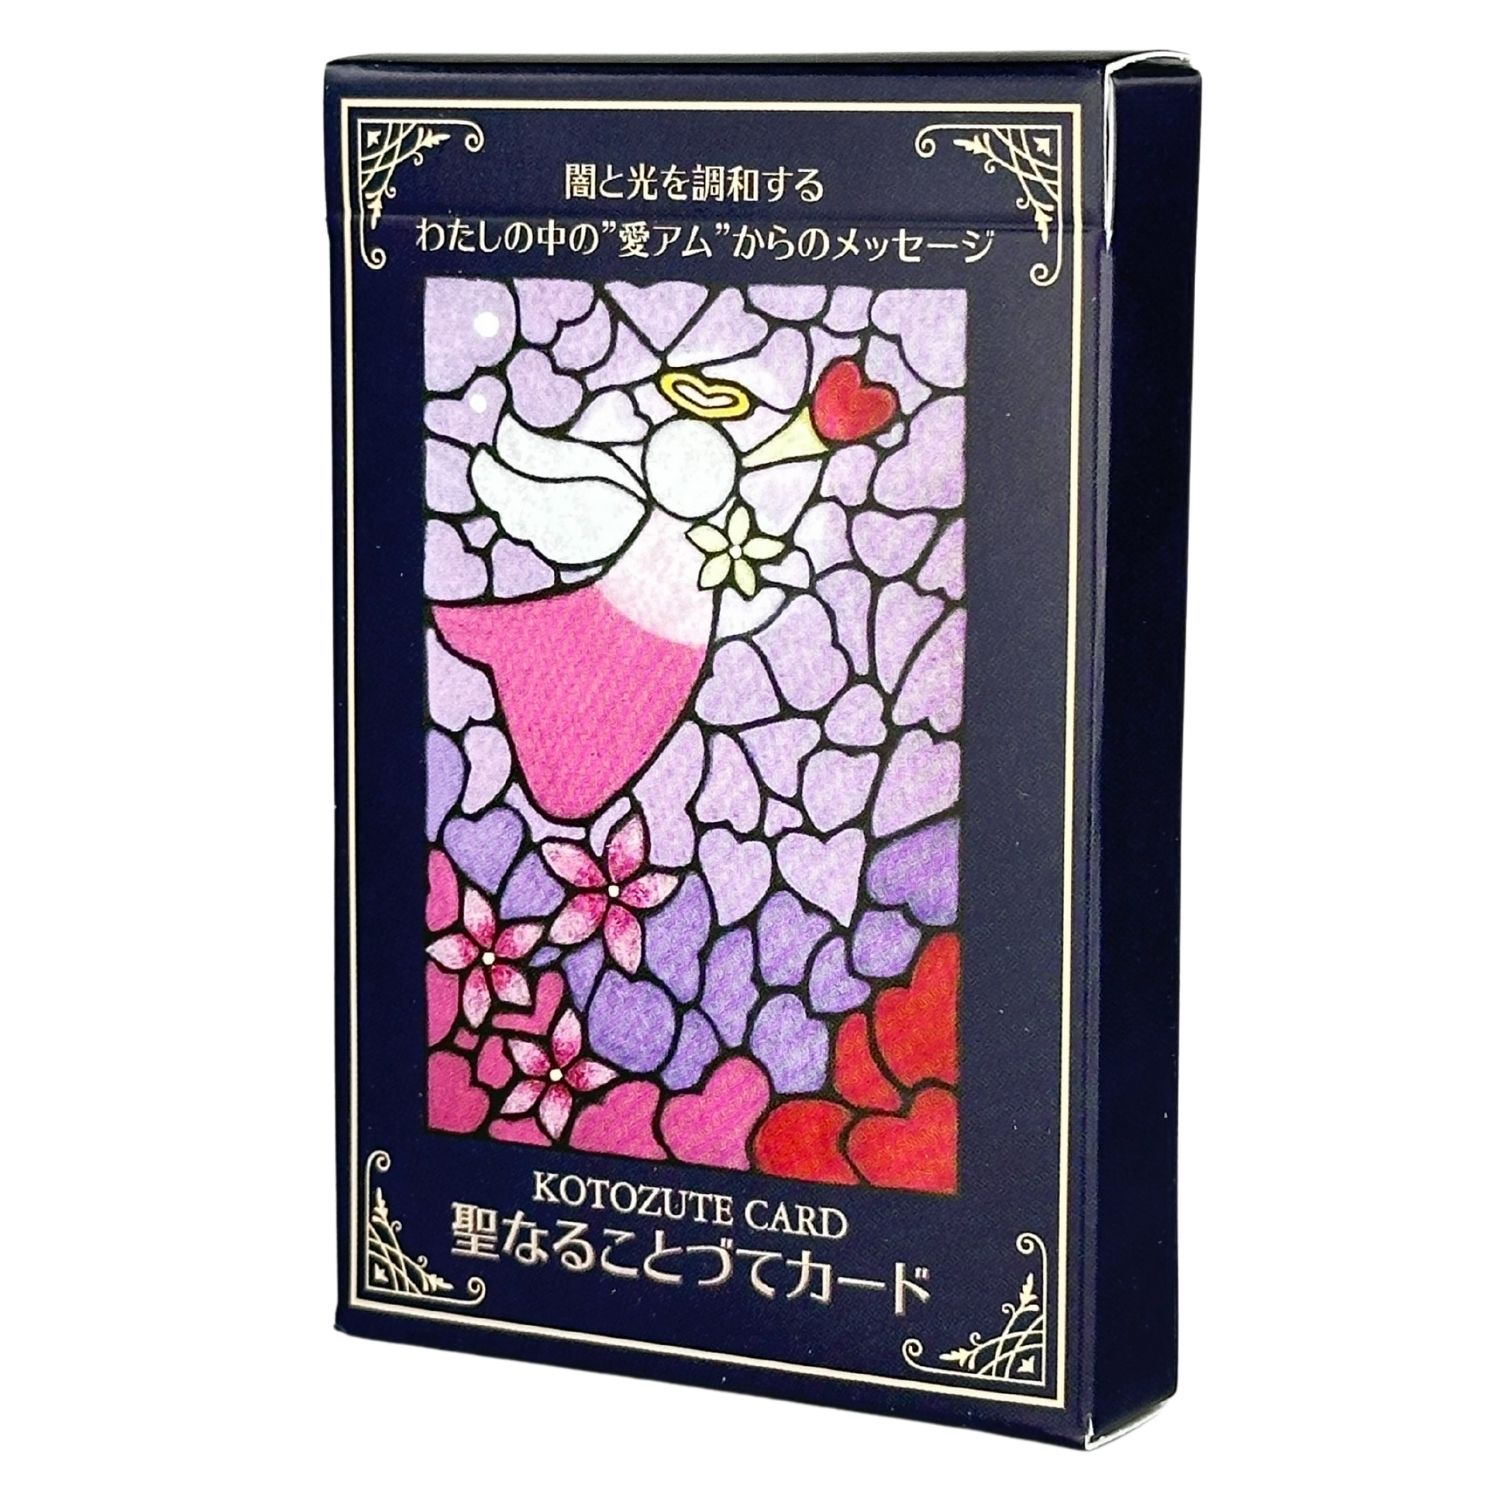 オラクルカード 日本語版 占い  聖なることづてカード   日本語解説書付き